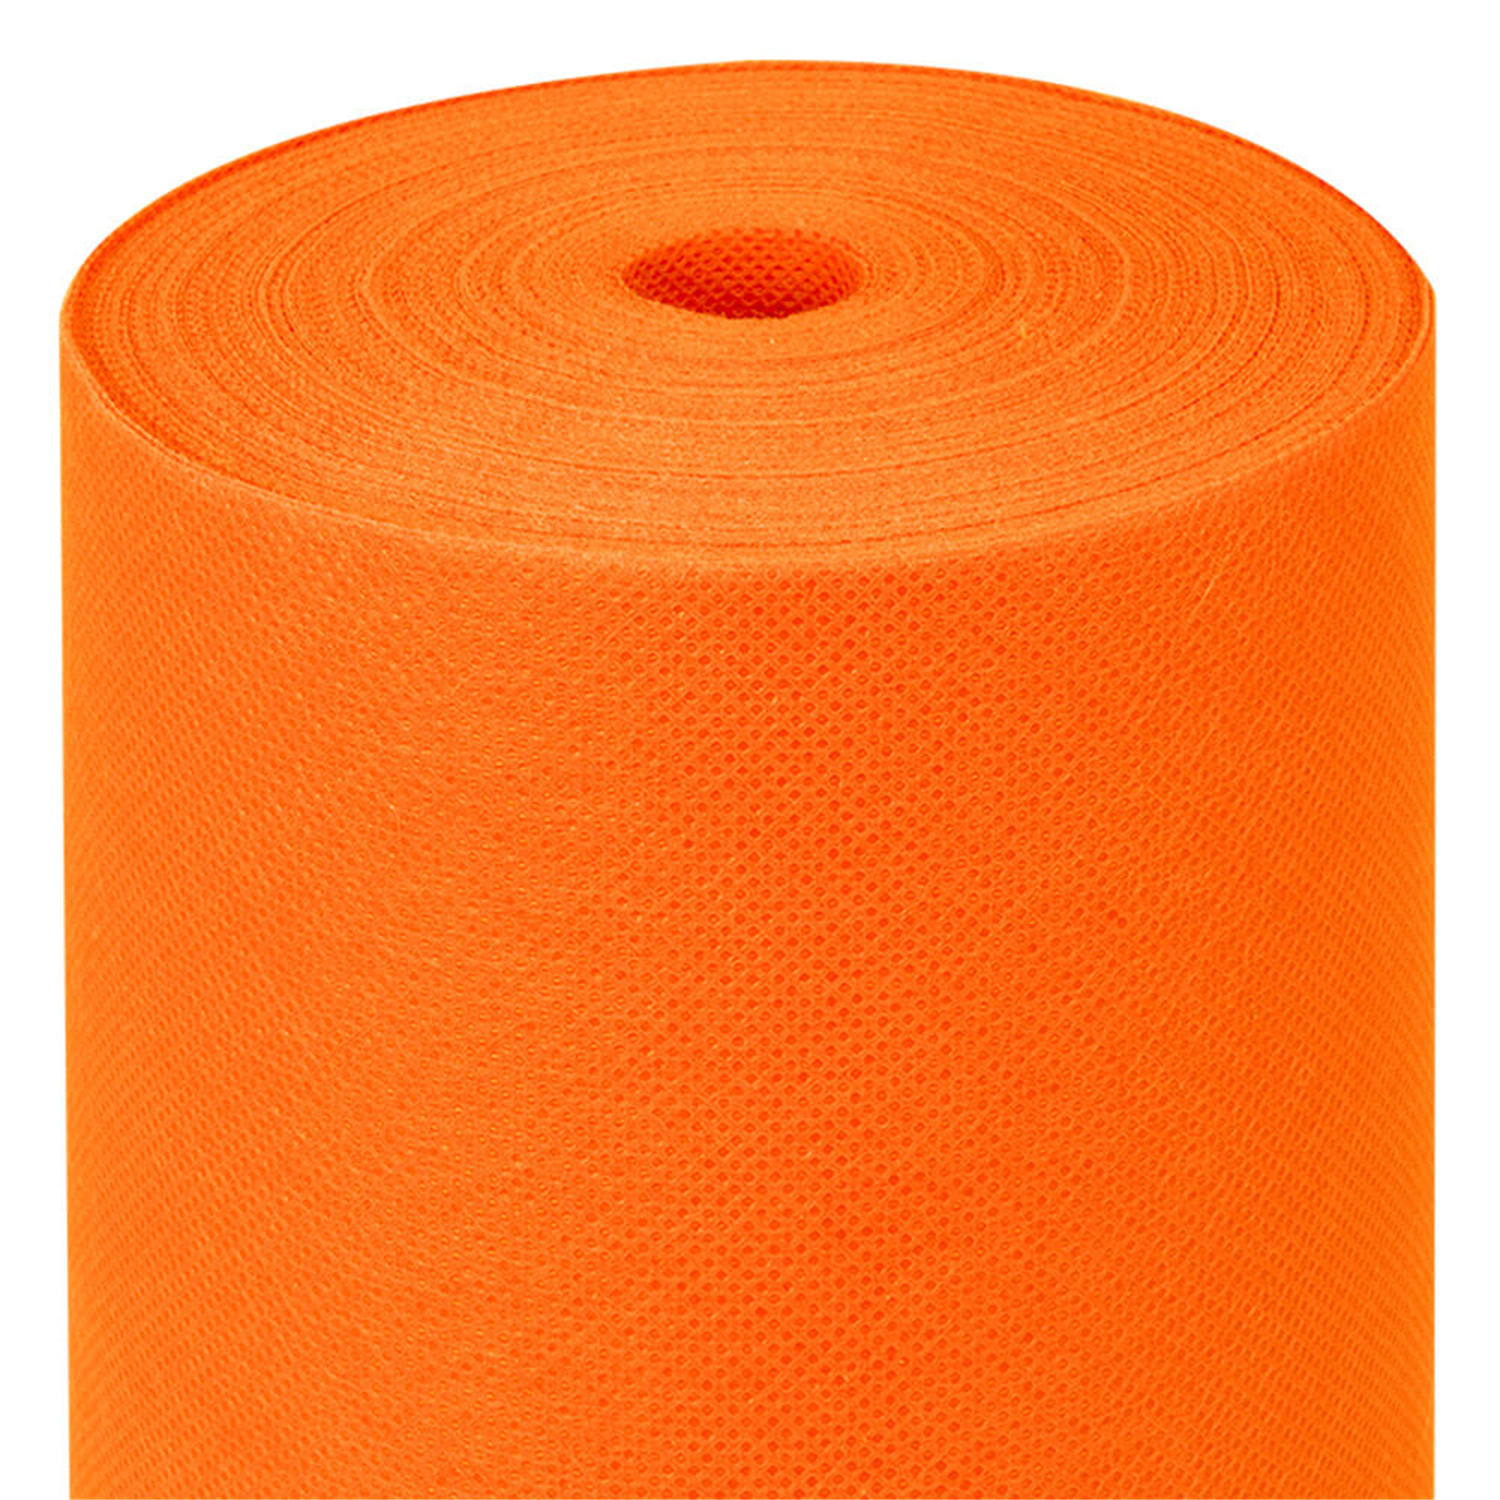 rouleau-nappe-papier-intisse-spunbond-predecoupe-orange-1m20x50m40-prosaveurs